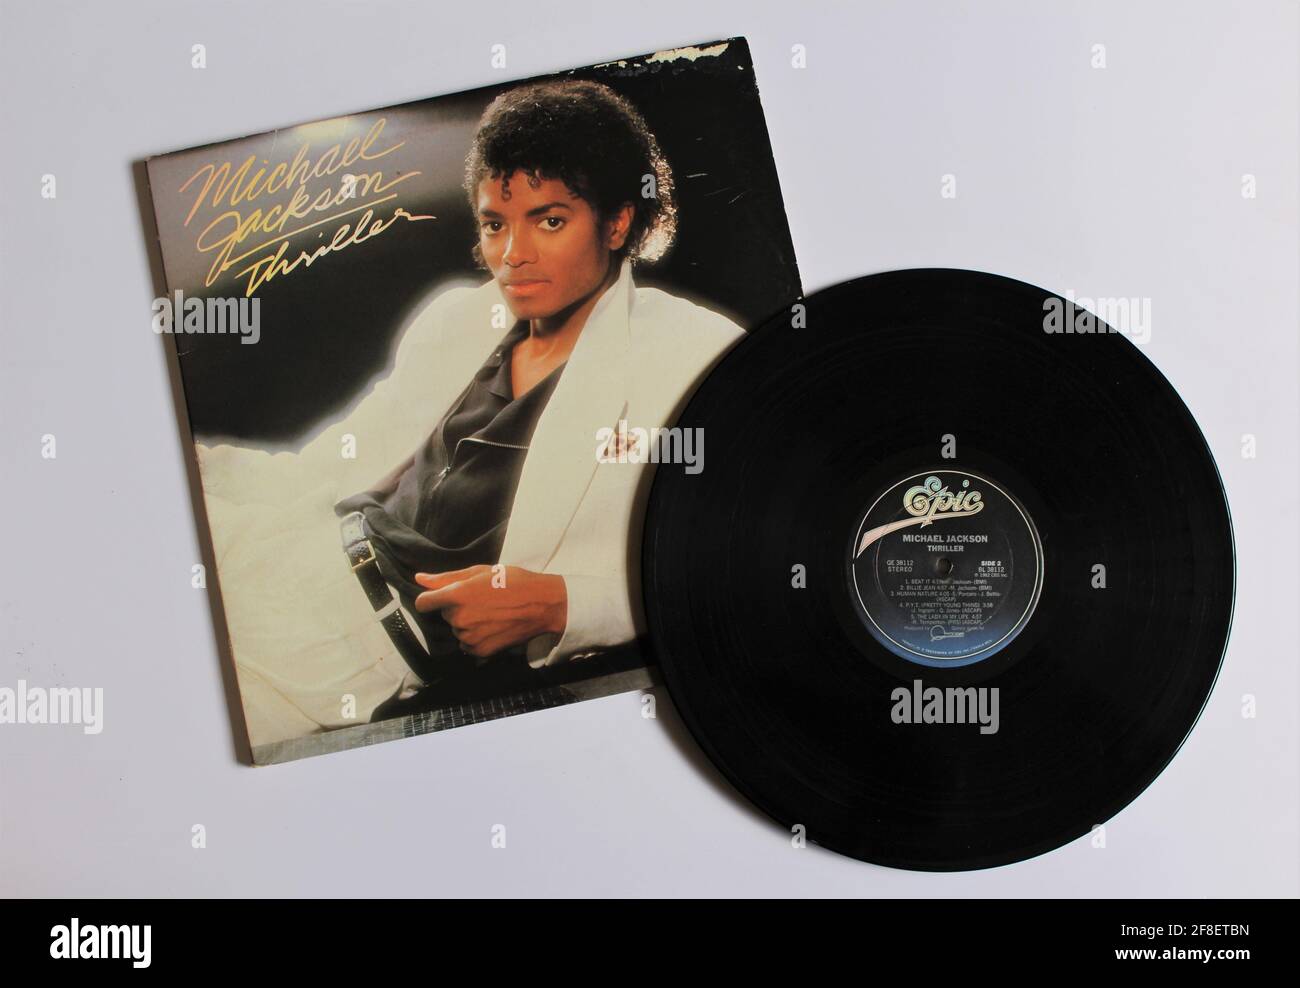 Pop-, Disco-, Rock- und Funk-Künstler, Michael Jackson-Musikalbum auf Vinyl-LP-Schallplatte.  Titel: Thriller Album Cover Stockfotografie - Alamy